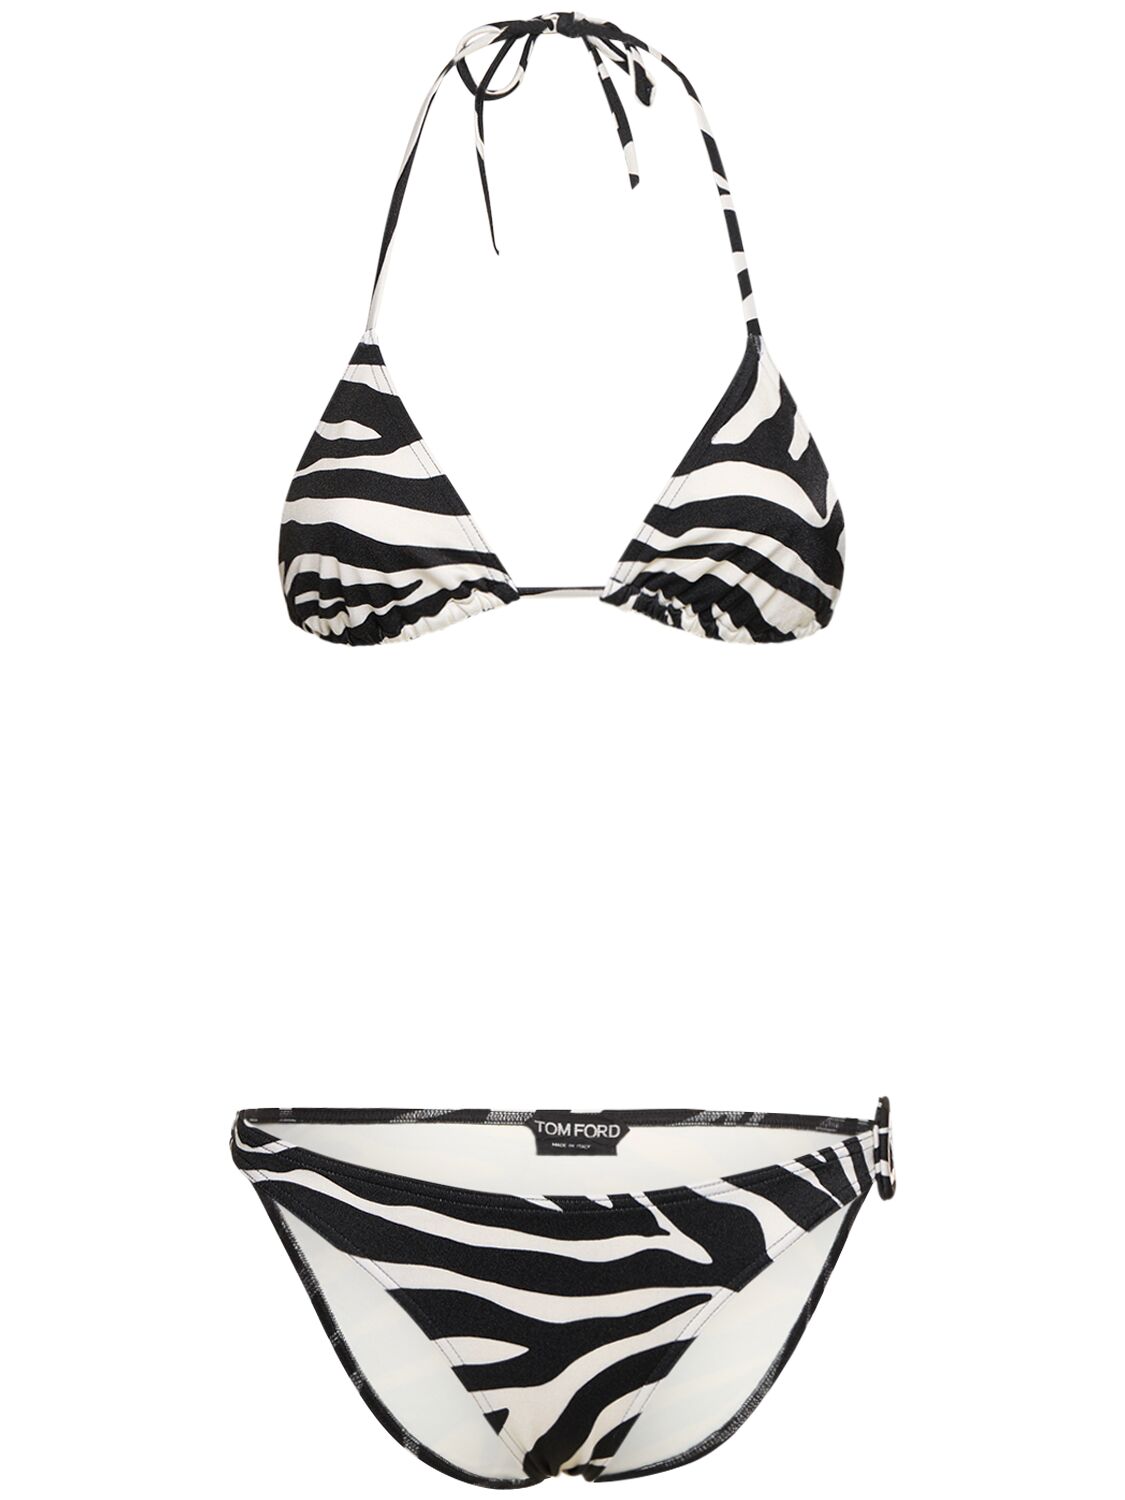 Tom Ford Printed Triangle Bikini Set In Black,white